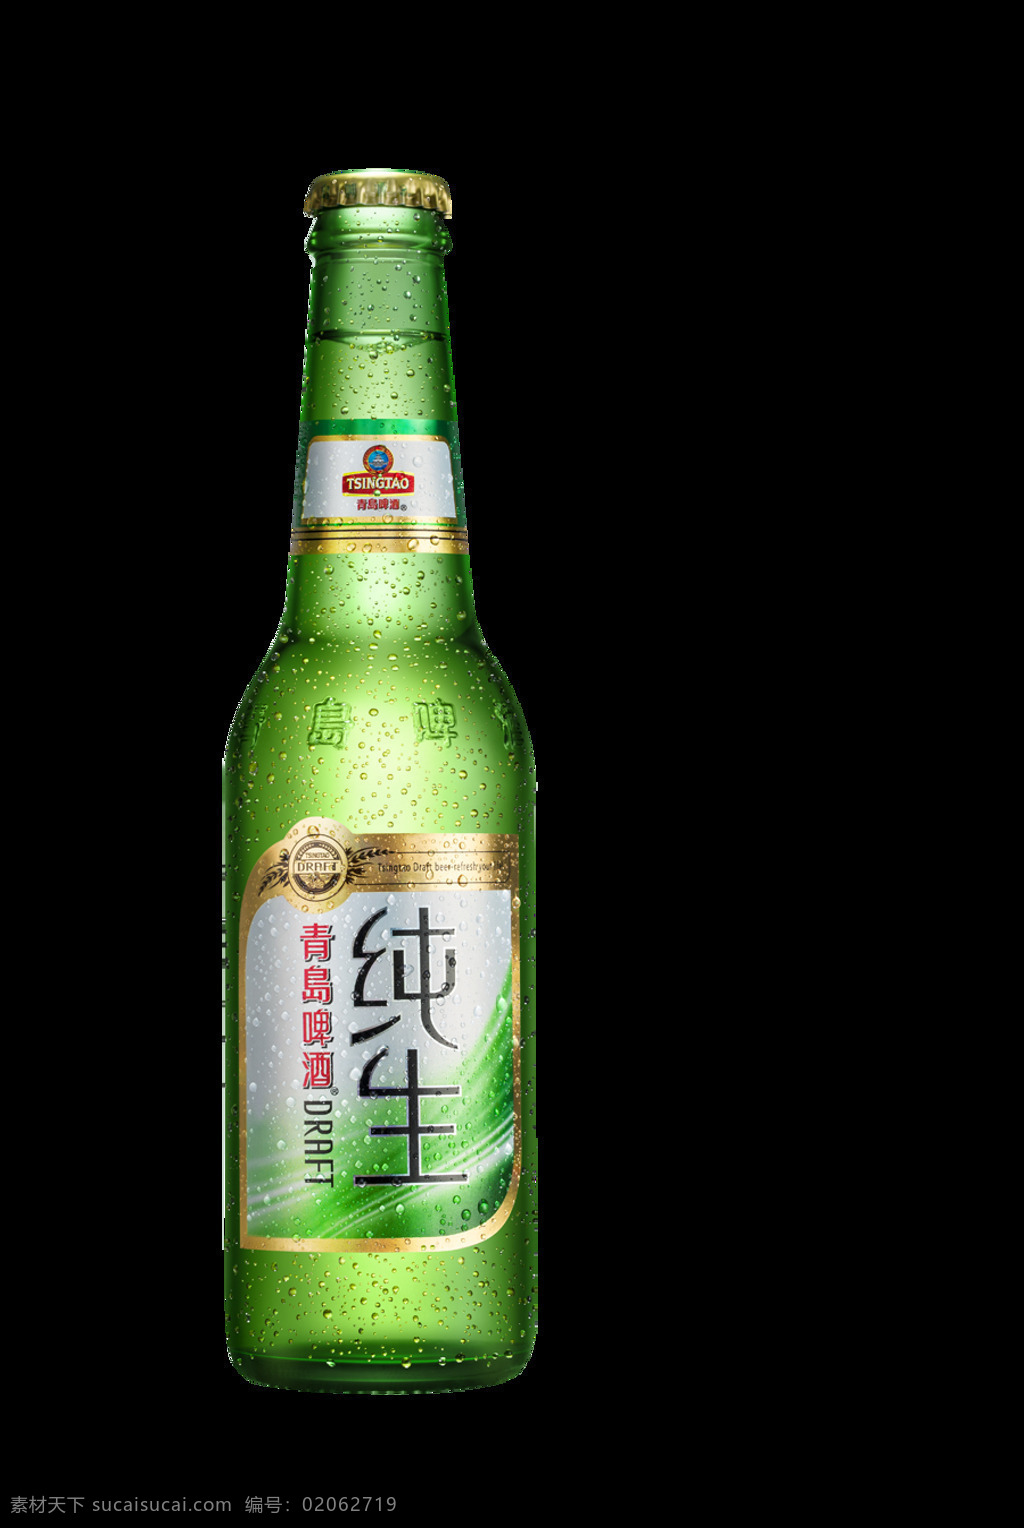 啤酒瓶 绿色 正面 免抠 玻璃 酒瓶 格式 生活百科 生活用品